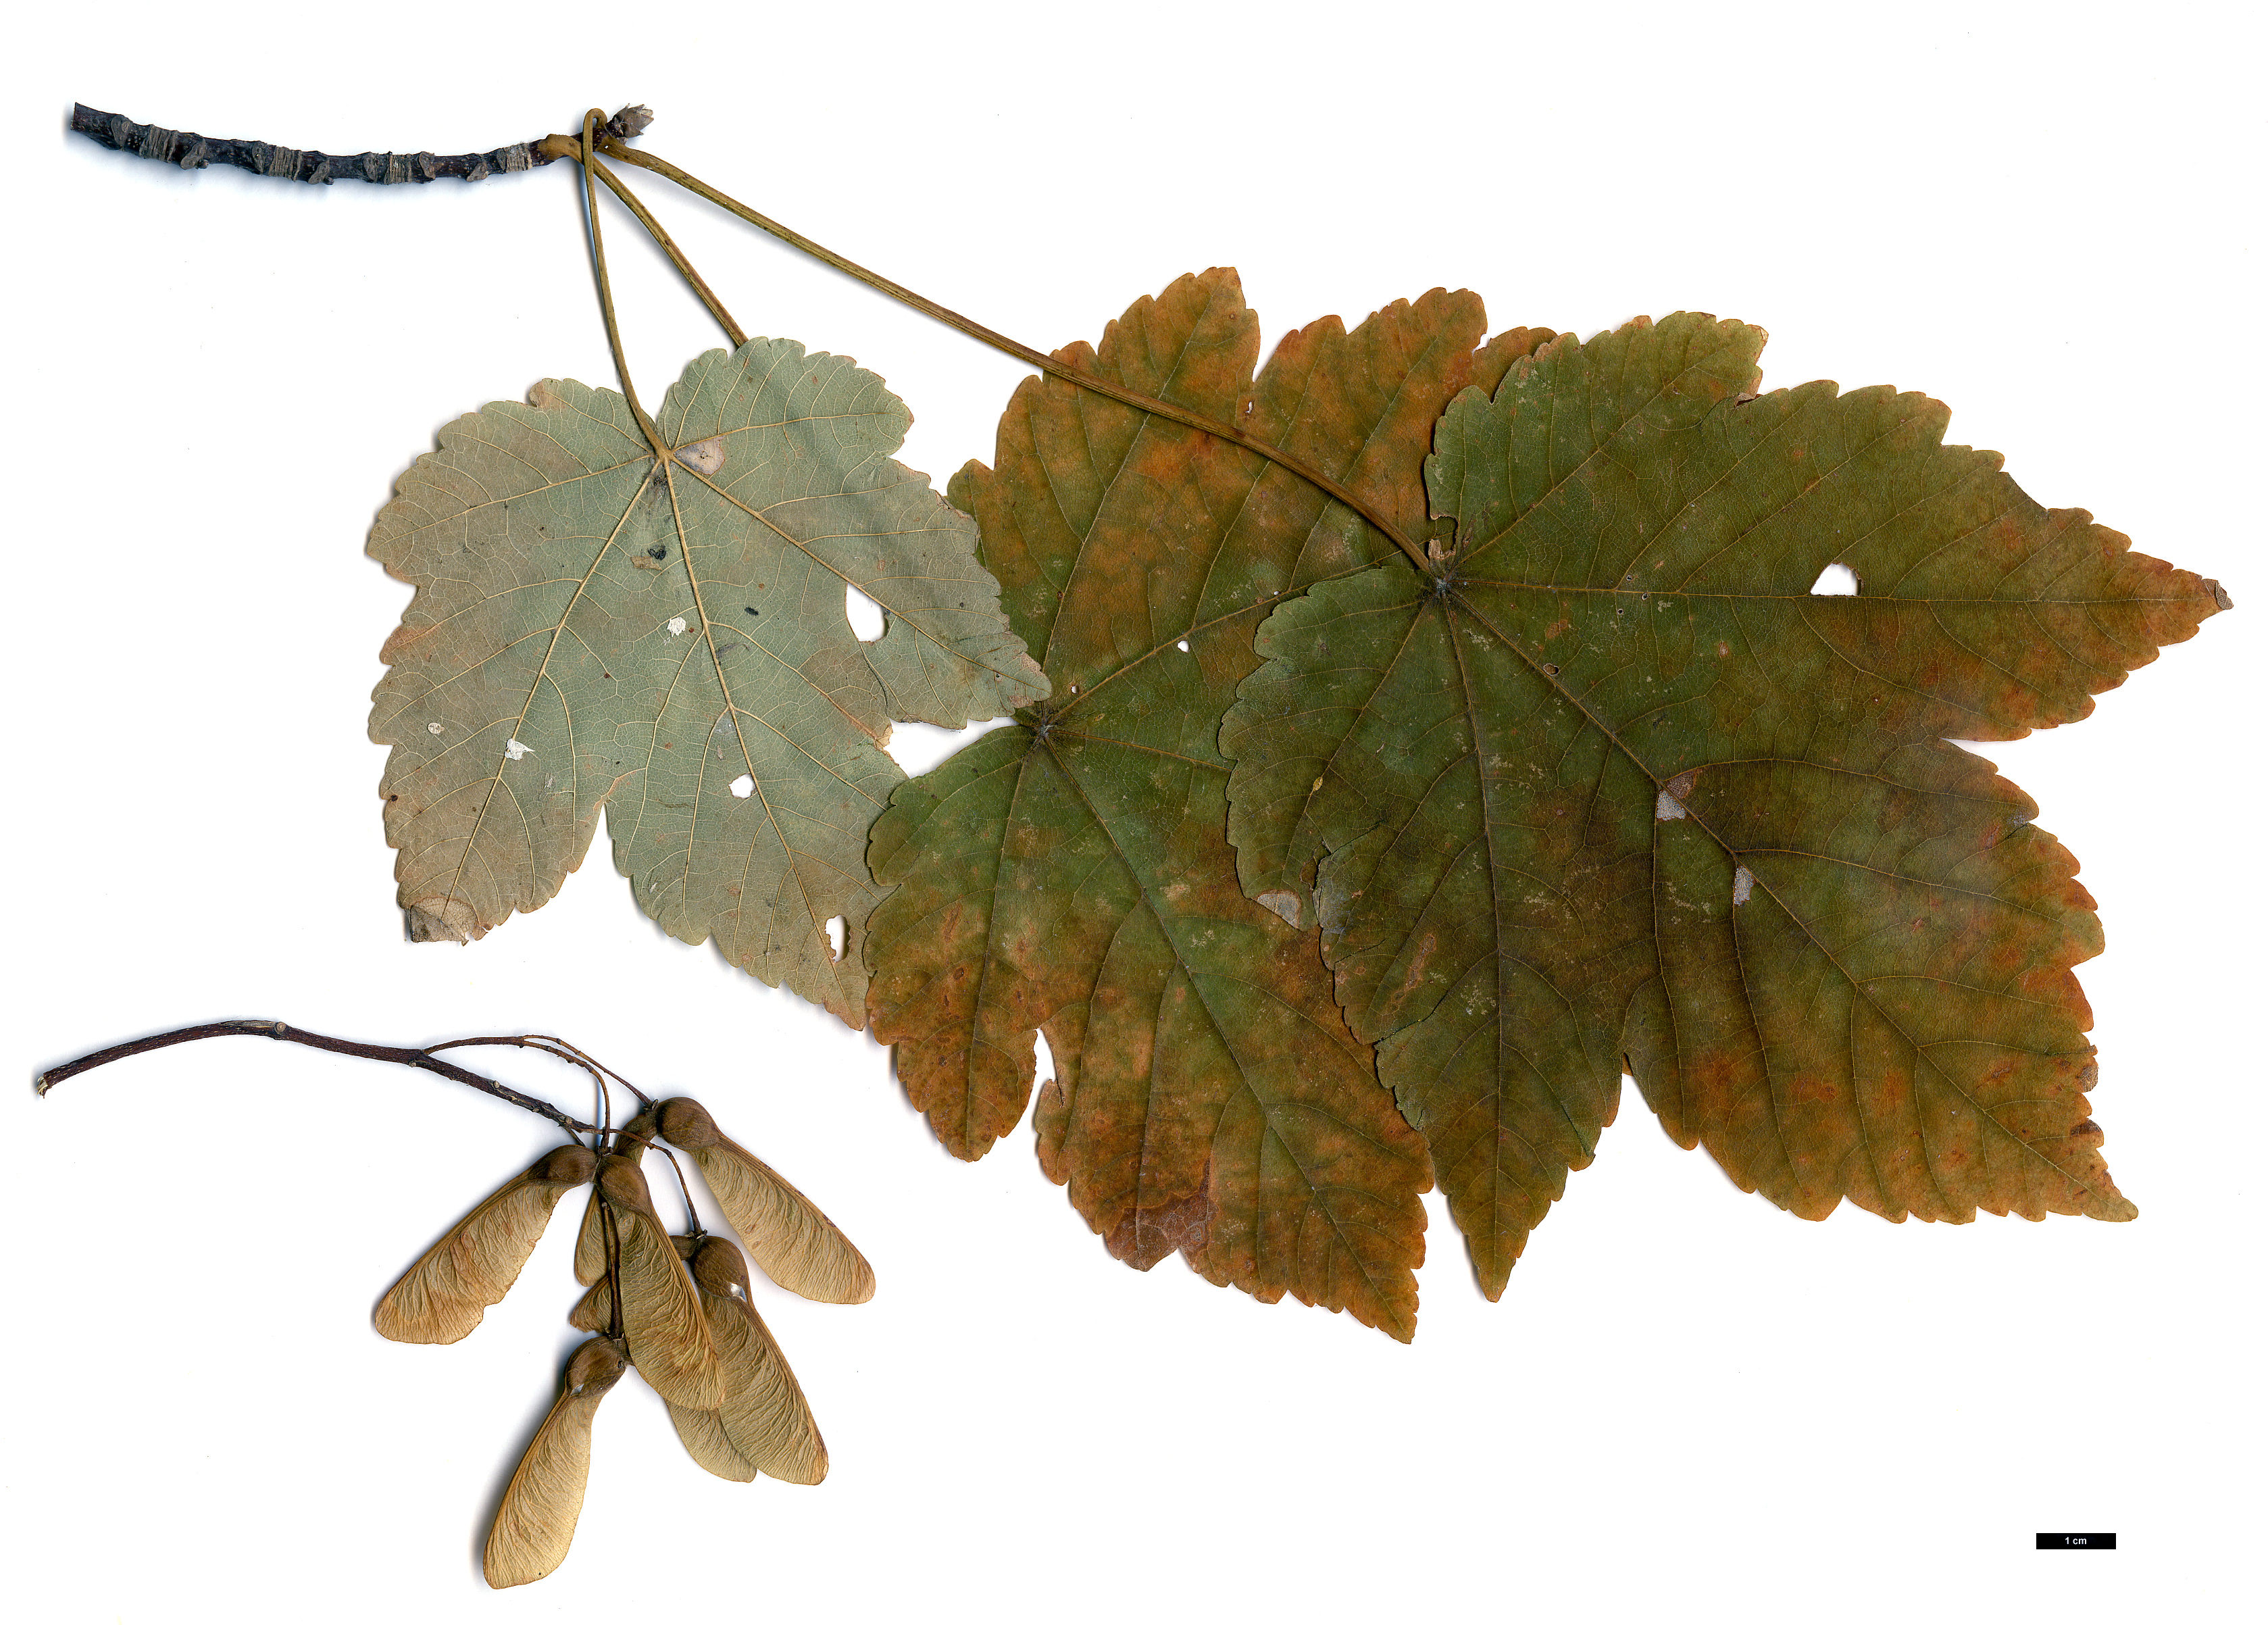 High resolution image: Family: Sapindaceae - Genus: Acer - Taxon: velutinum